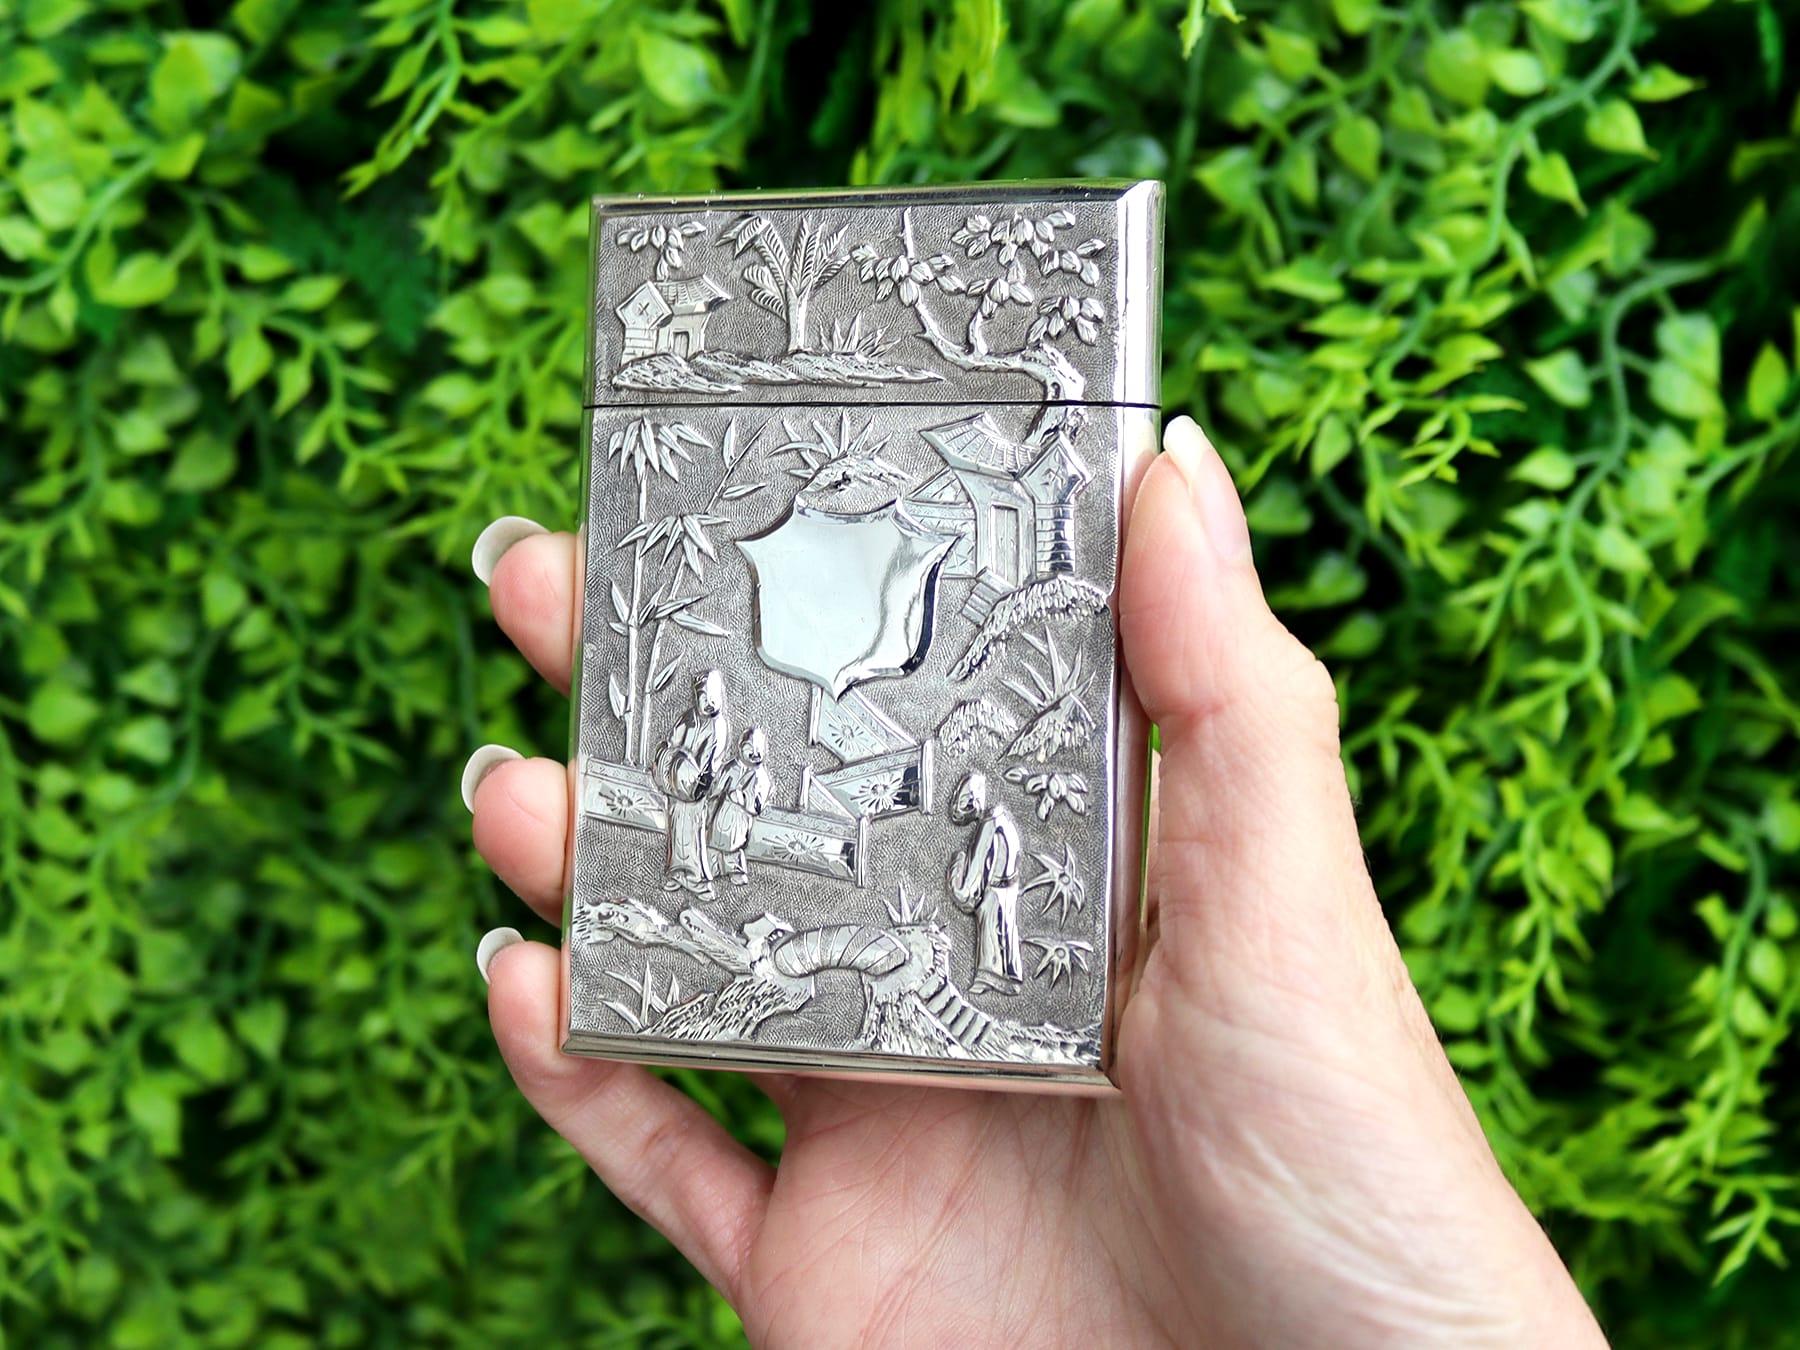 Ein außergewöhnliches, feines und beeindruckendes antikes chinesisches Export-Silber-Kartenetui; Teil unserer vielfältigen asiatischen Silberwaren-Sammlung

Die Anterior-Oberfläche dieses seltenen Kartenetuis aus chinesischem Silber ist mit